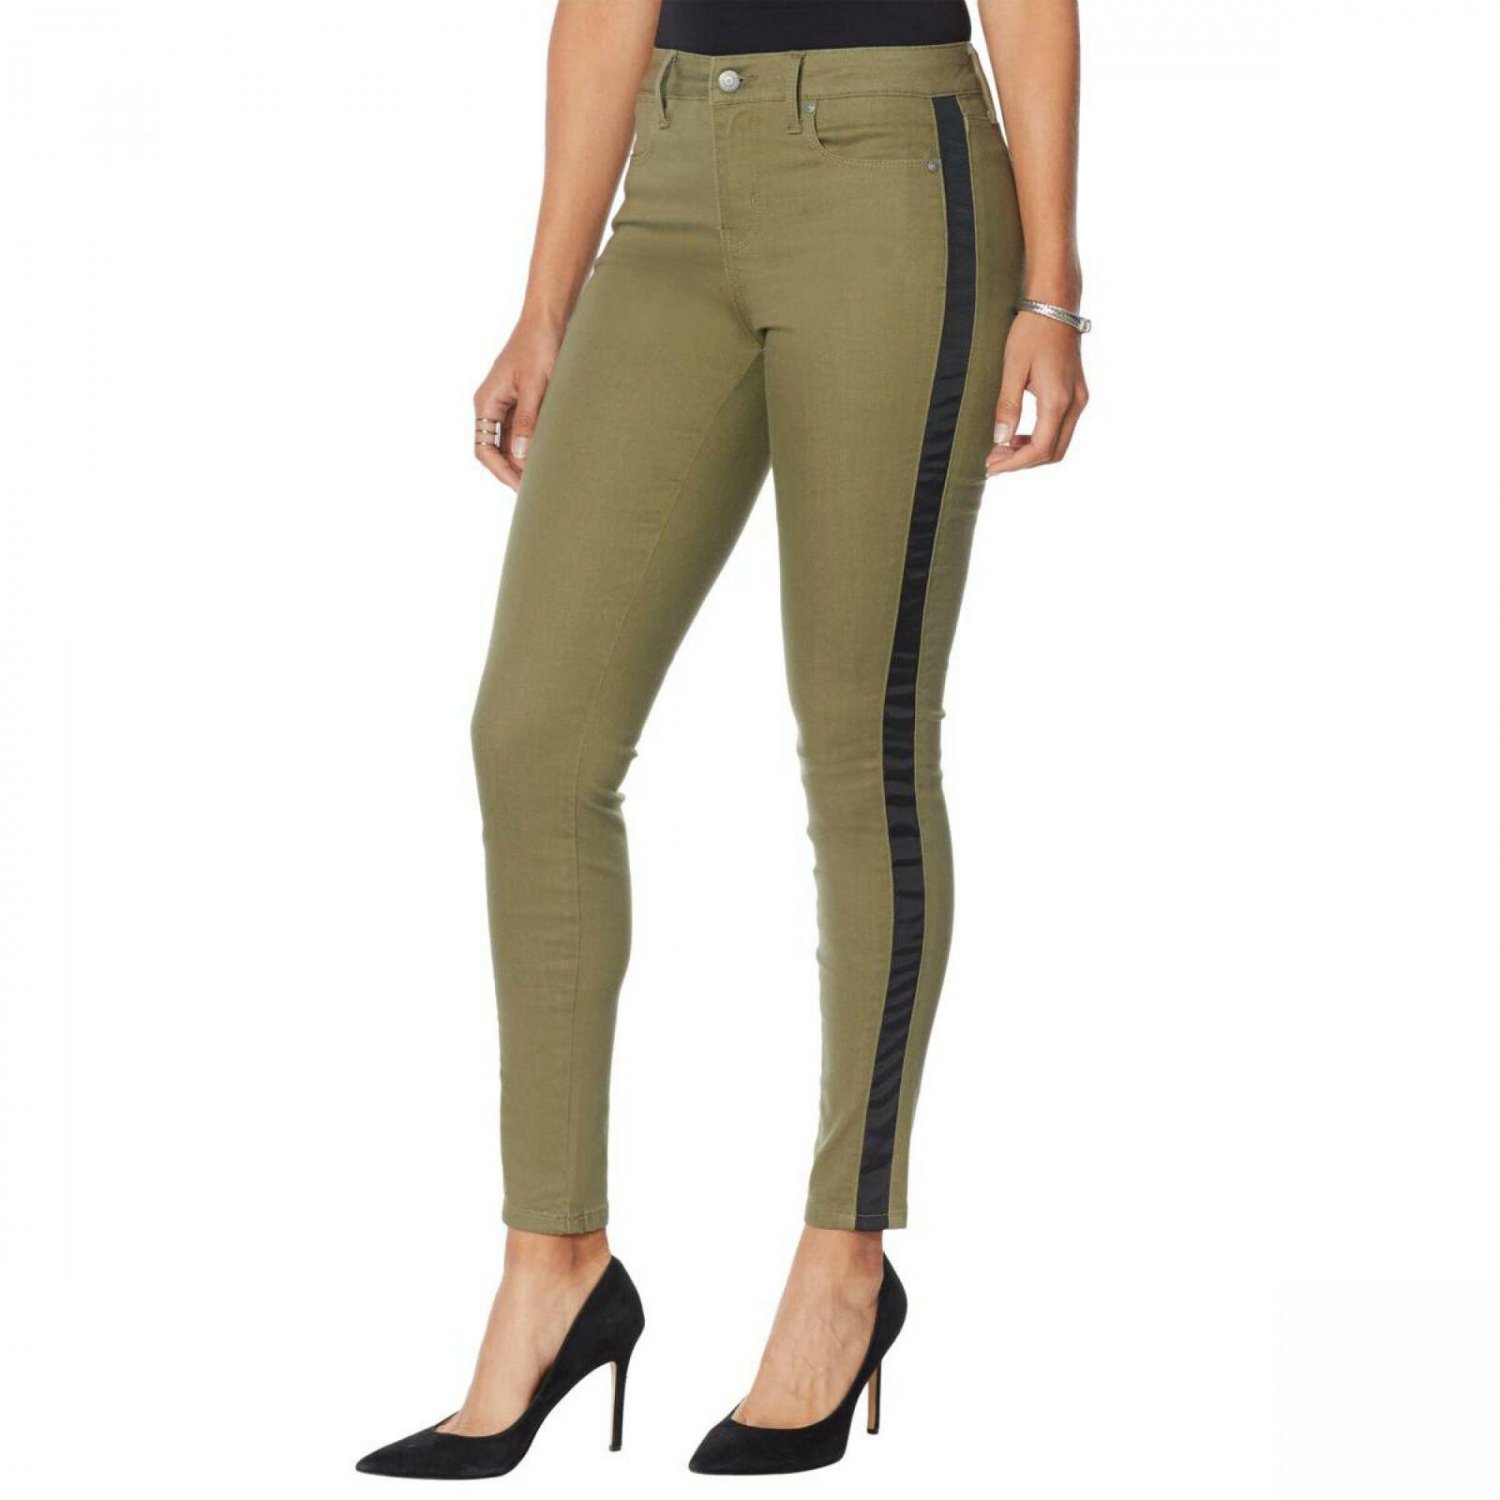 Colleen Lopez Women's Side Stripe Skinny Jeans 8 Olive Green